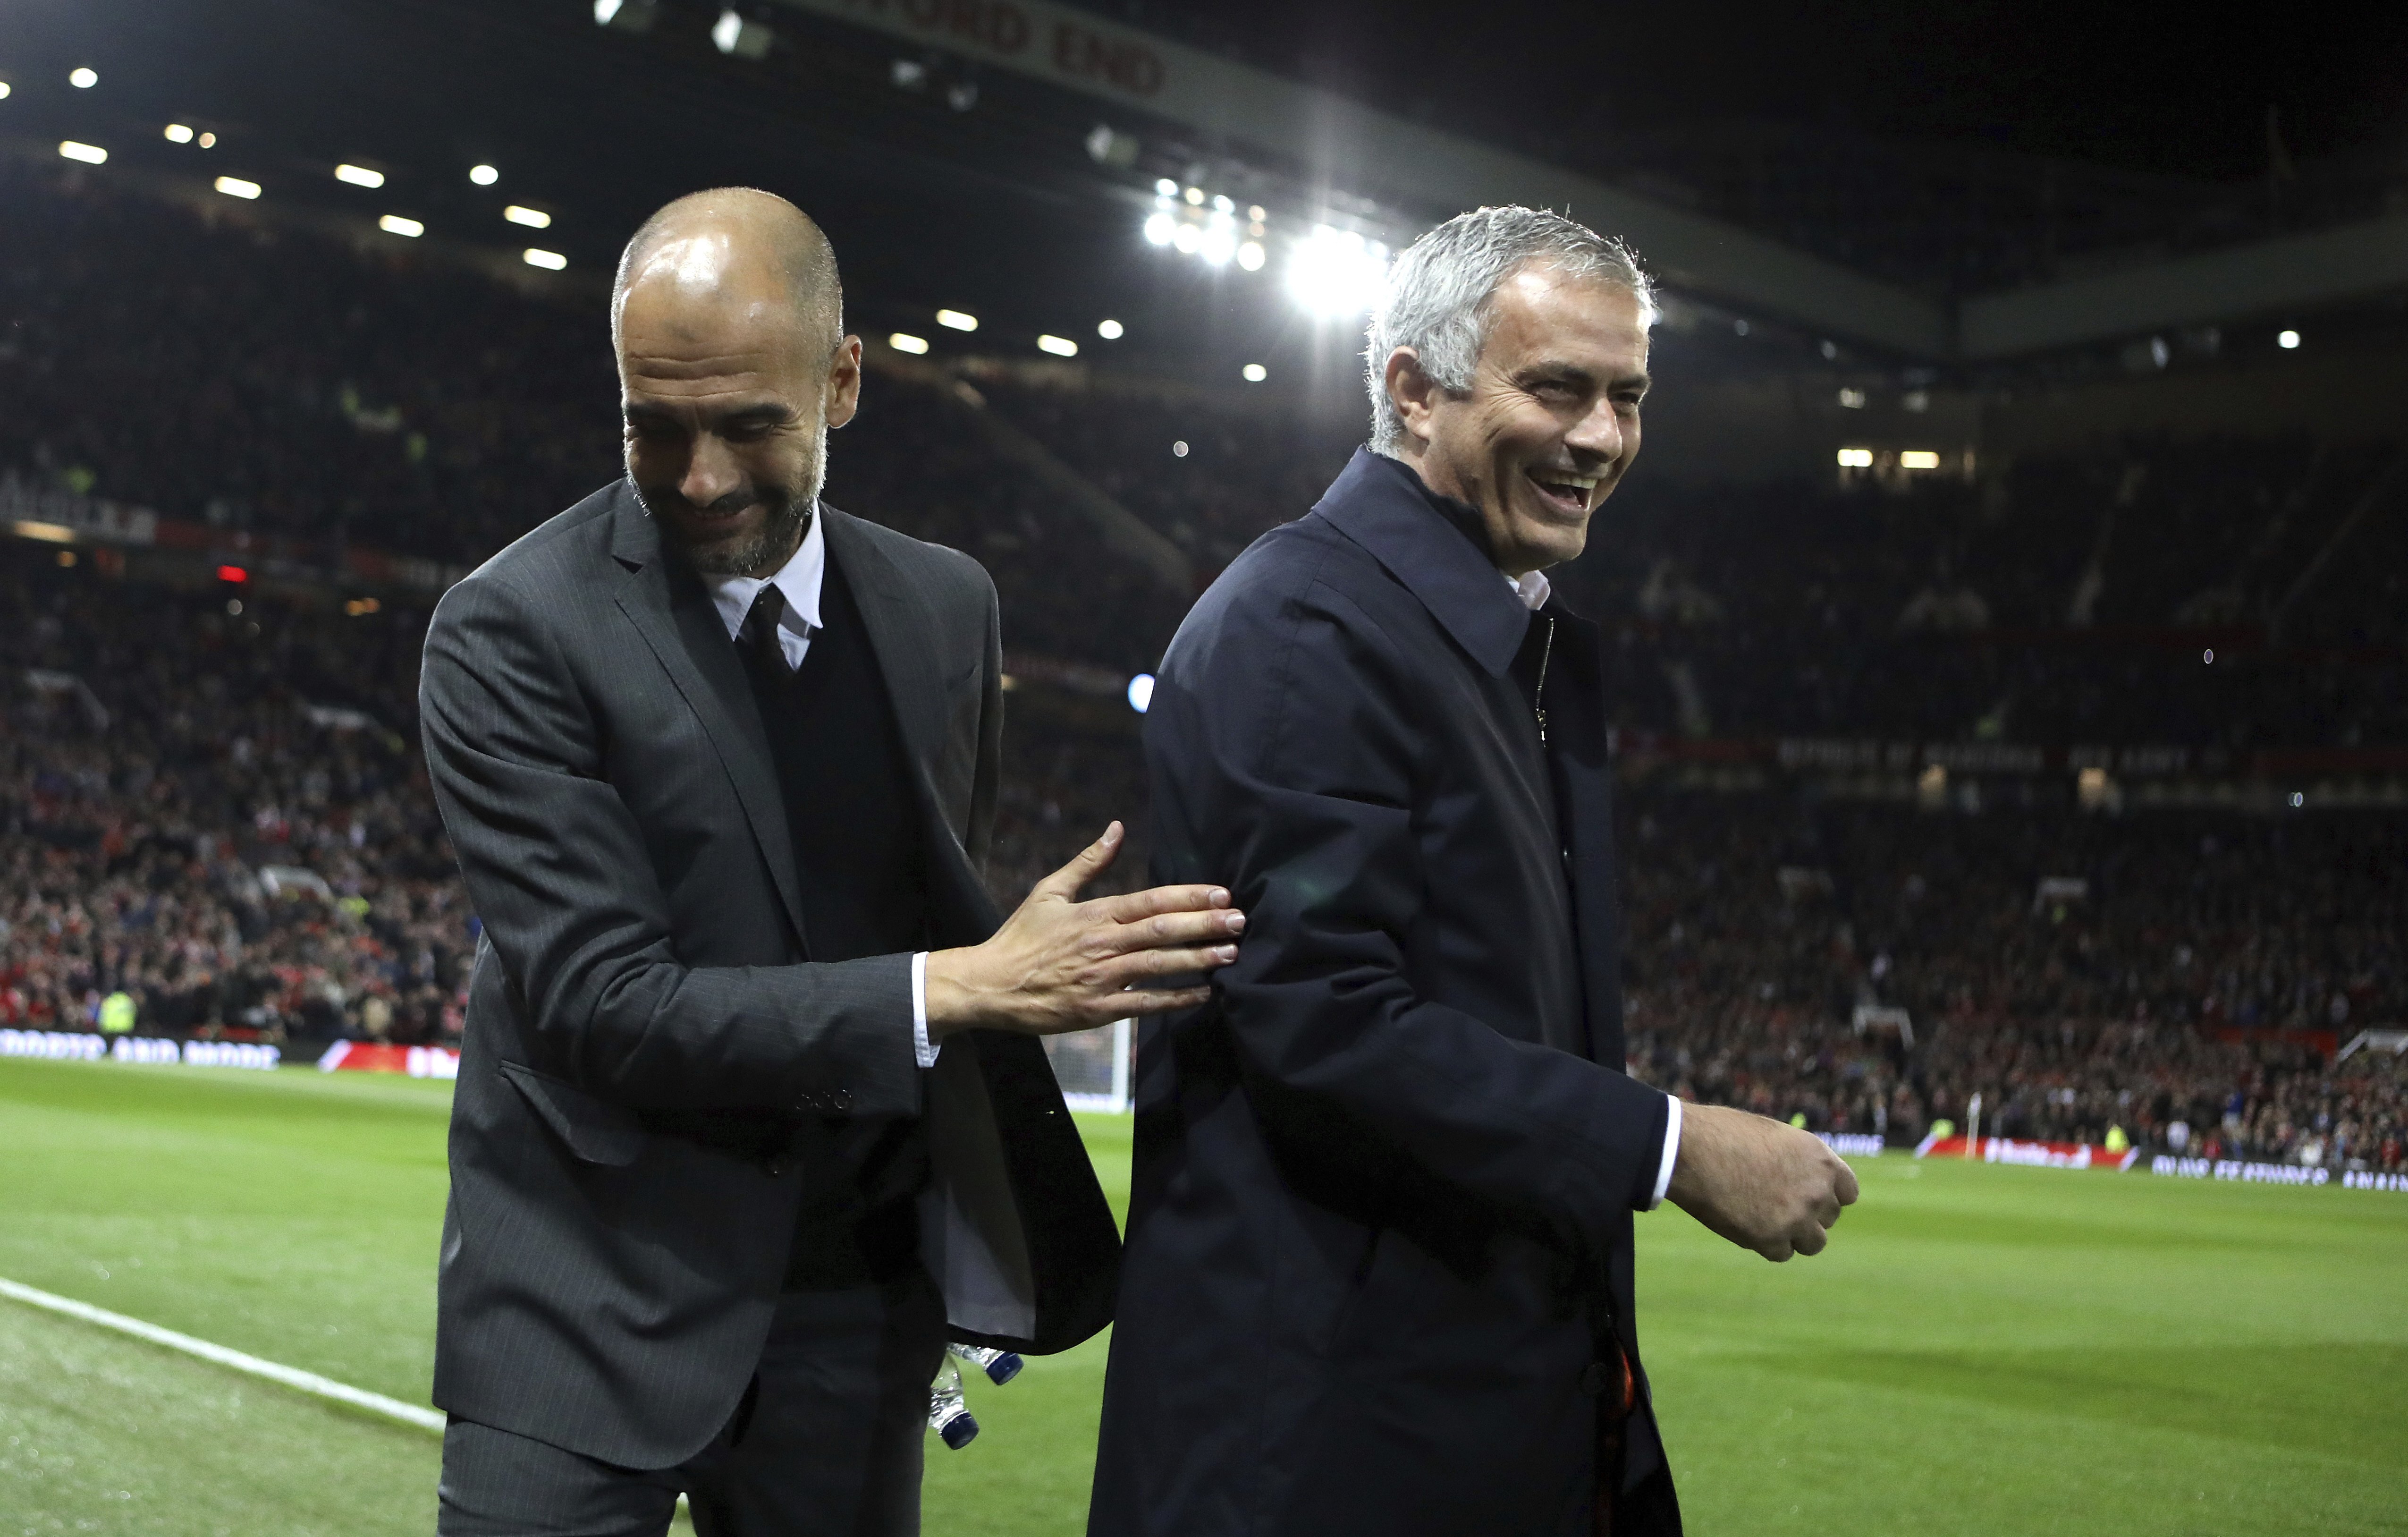 FOTO IMPACTE Mourinho es rapa al zero per assemblar-se a Guardiola: horrorós